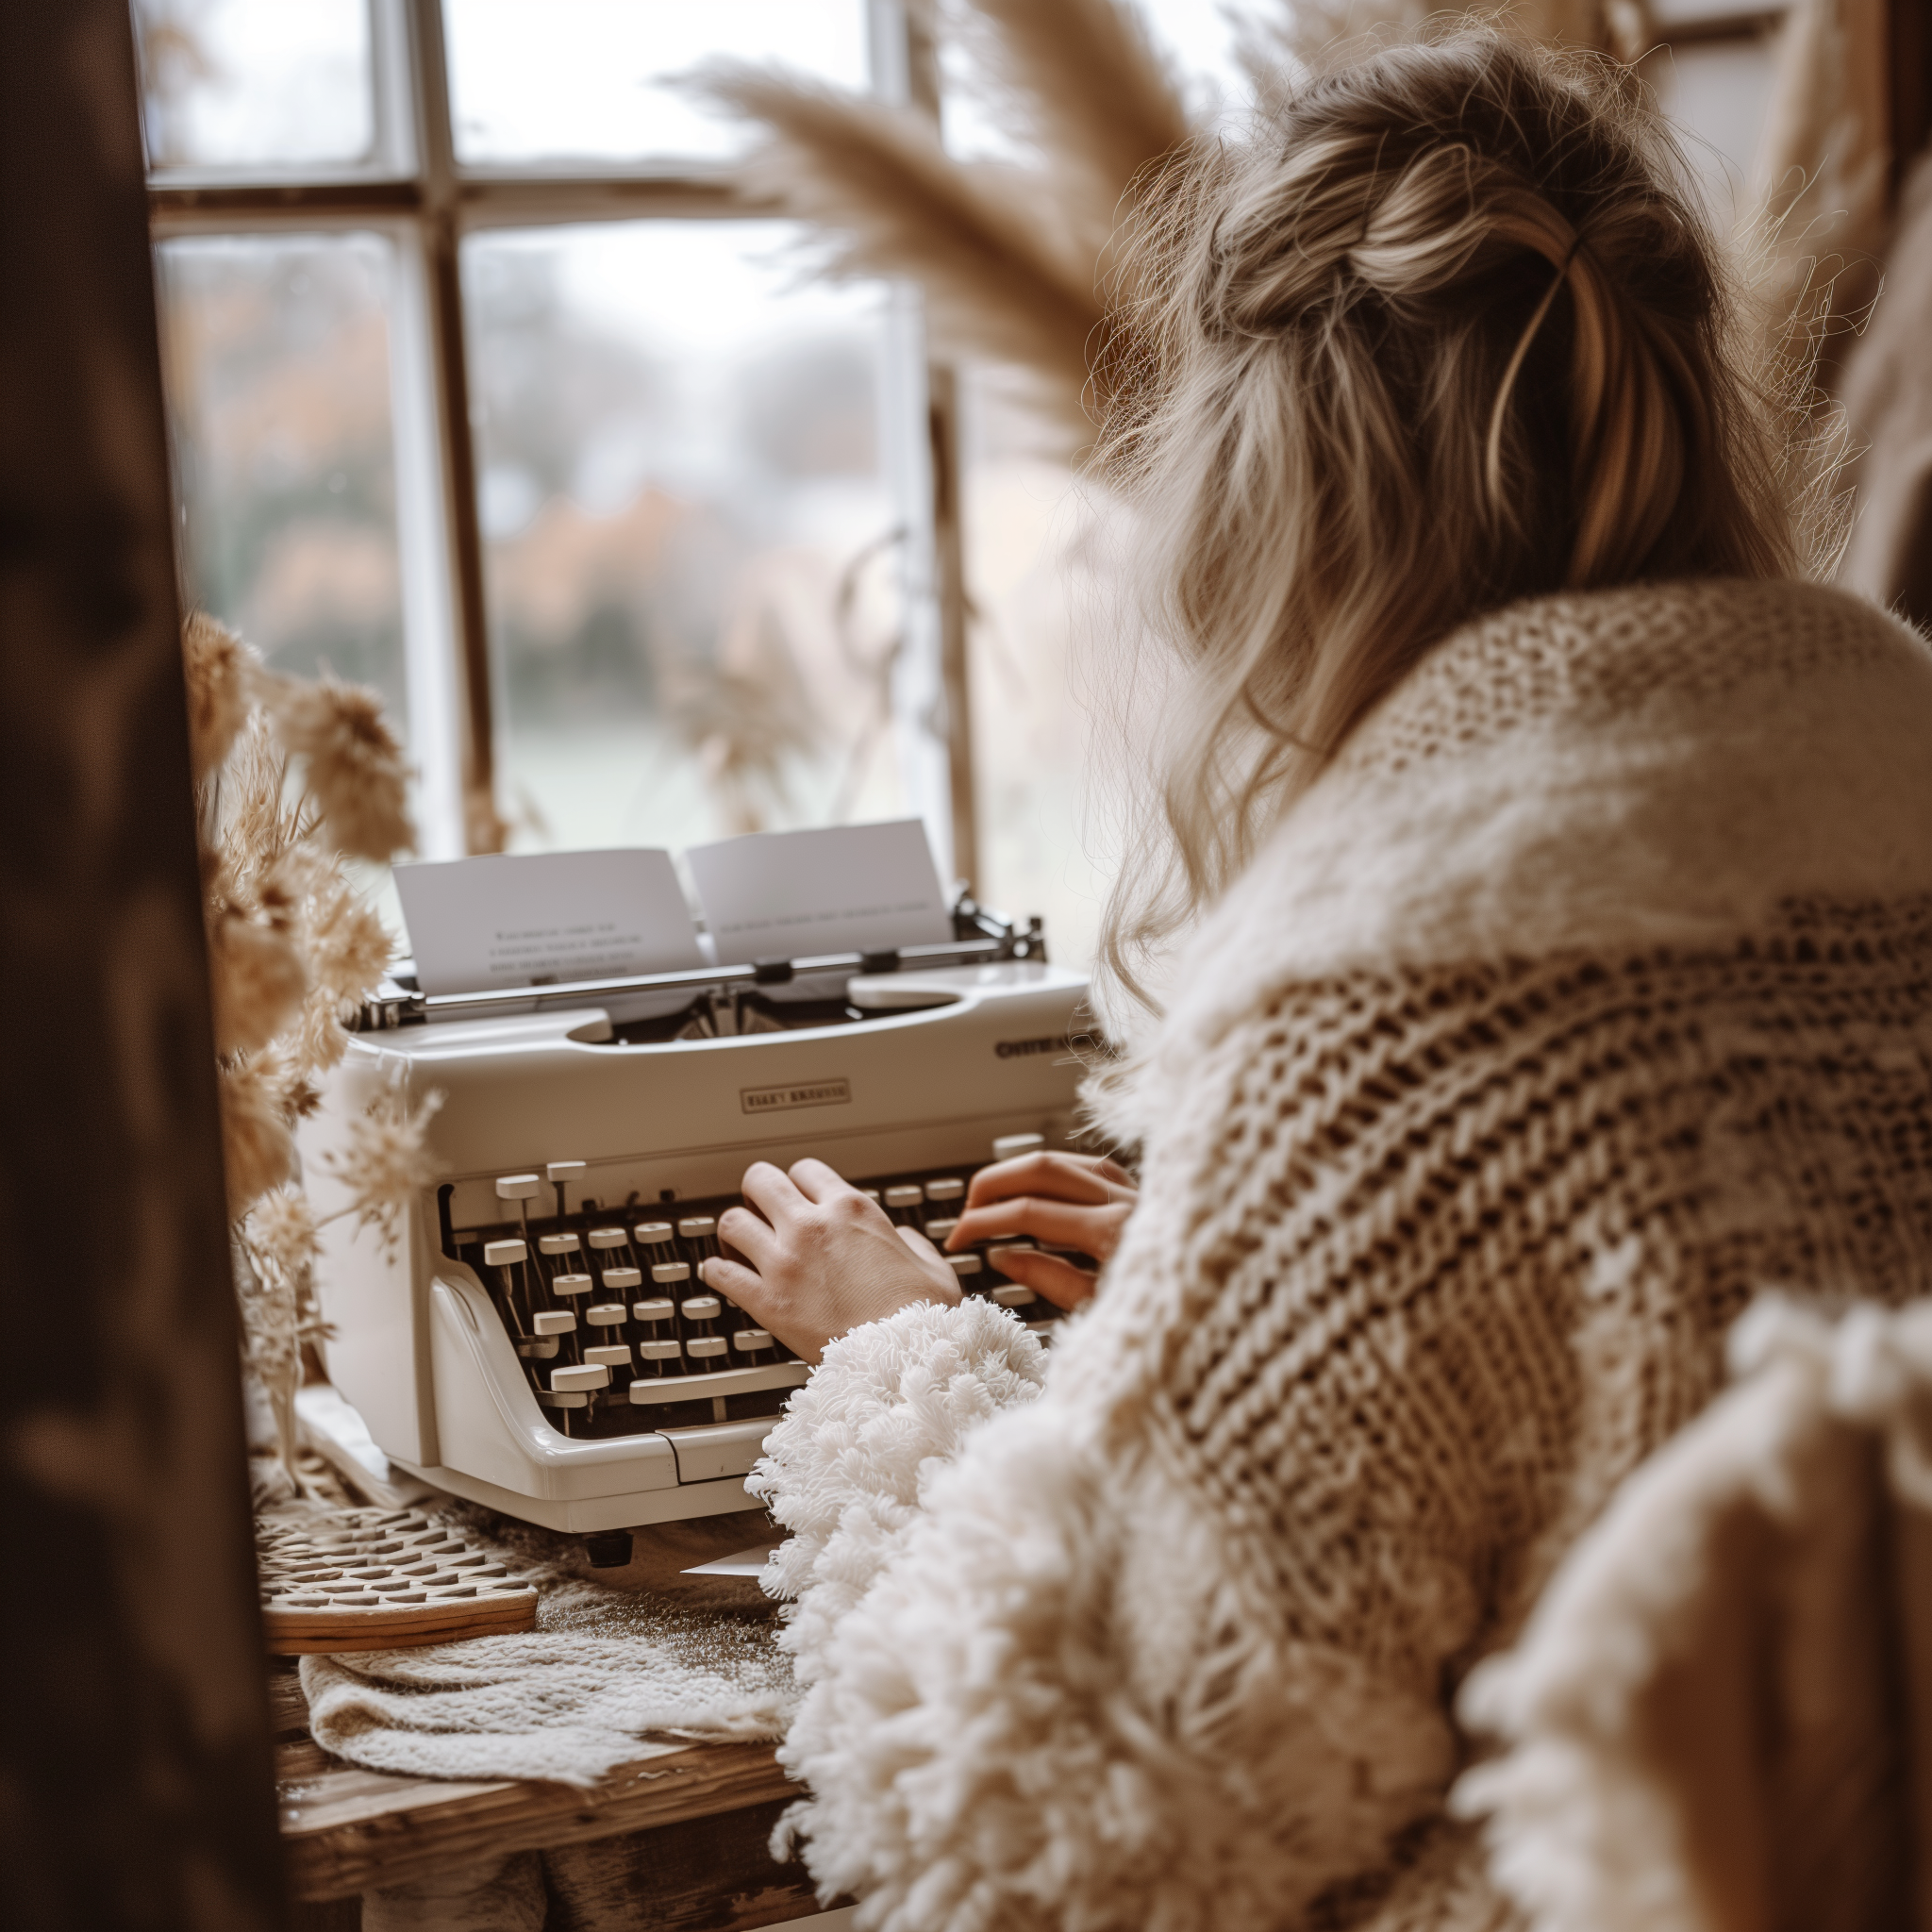 Una persona utilizando una máquina de escribir | Fuente: Midjourney